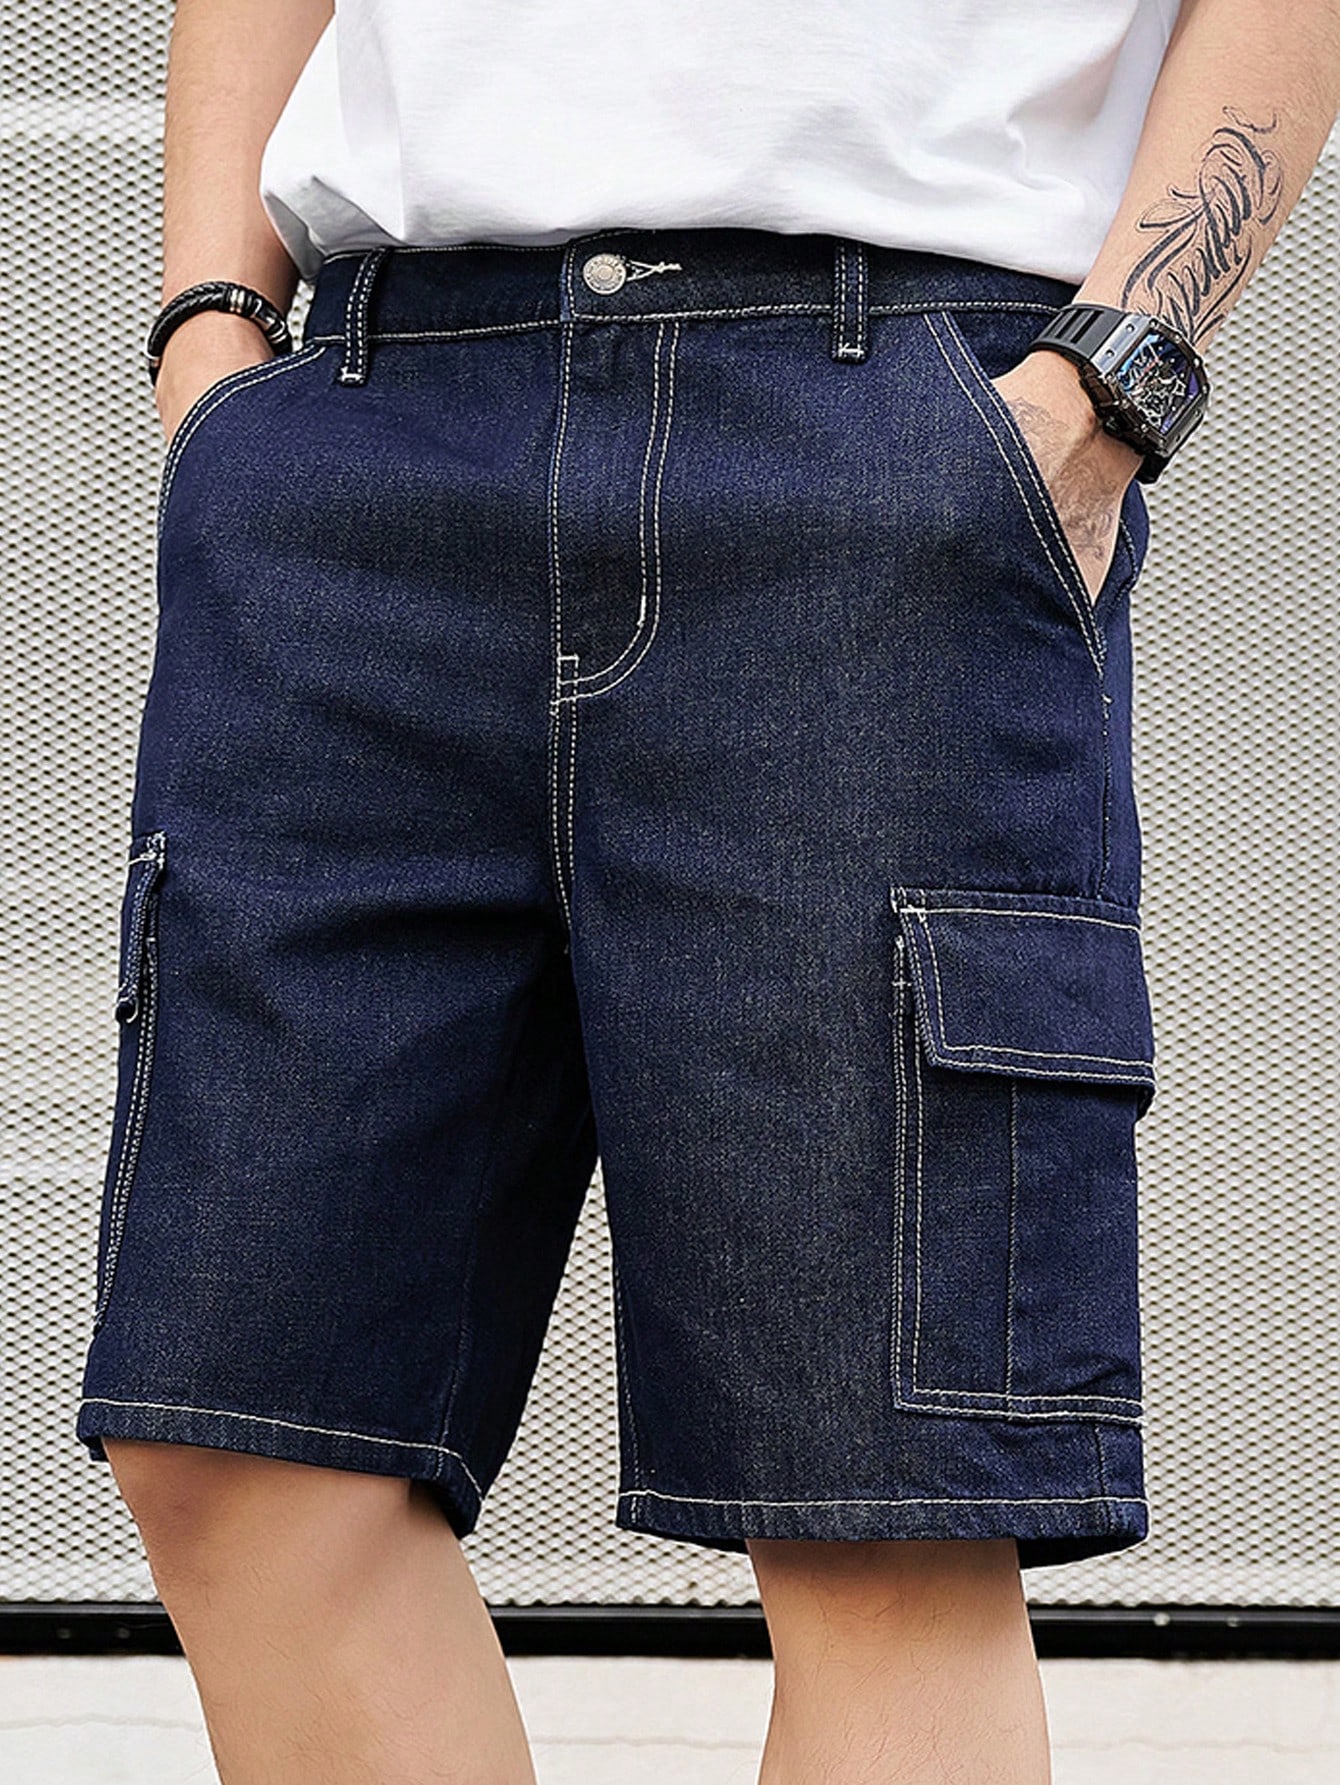 Мужские джинсовые шорты в стиле карго с диагональными карманами Manfinity Homme, синий